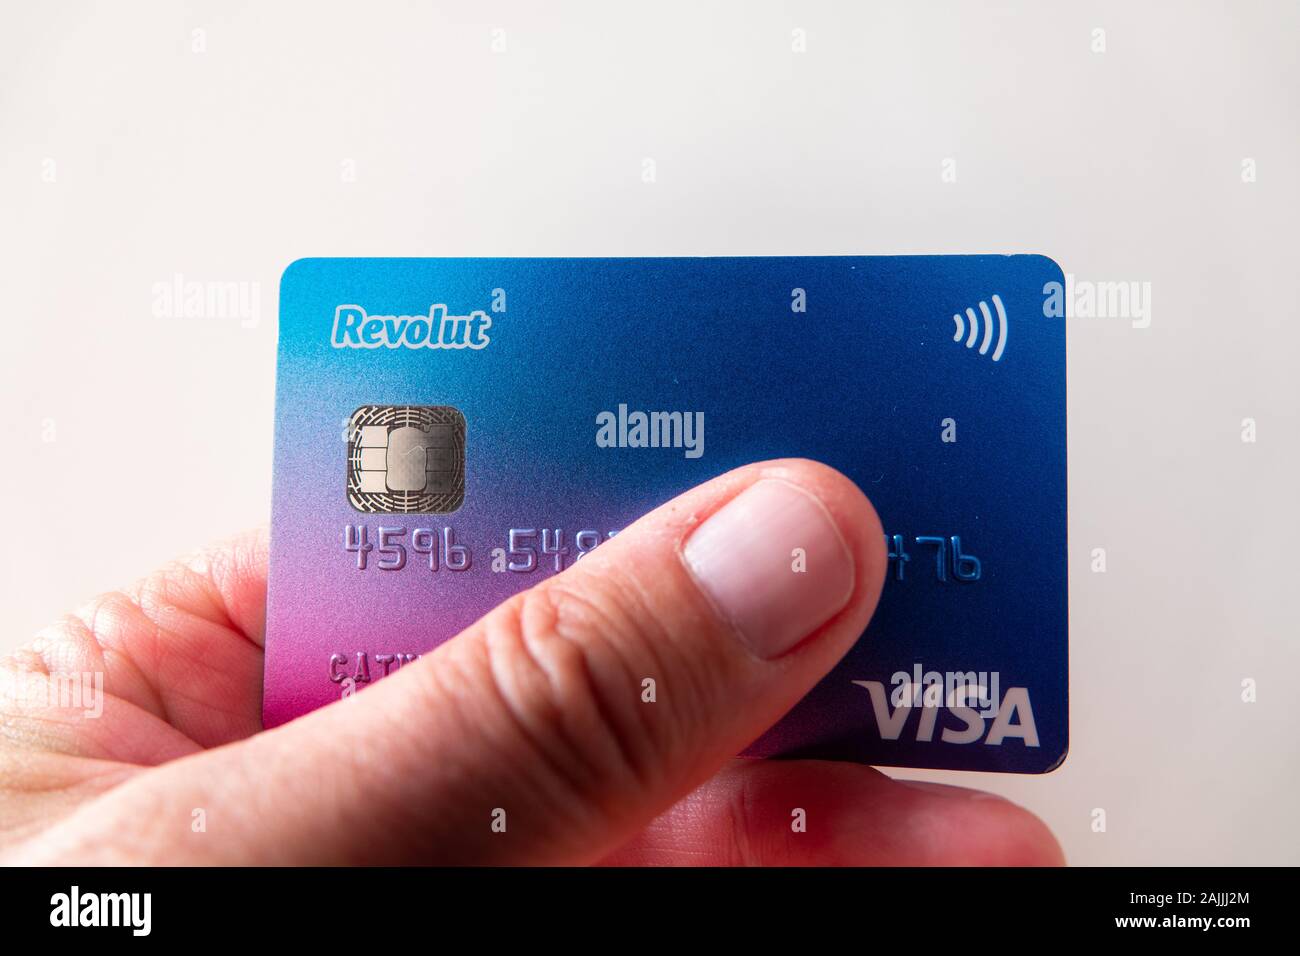 Mans pollice e mano con carta di credito Revolut Visa Foto stock - Alamy